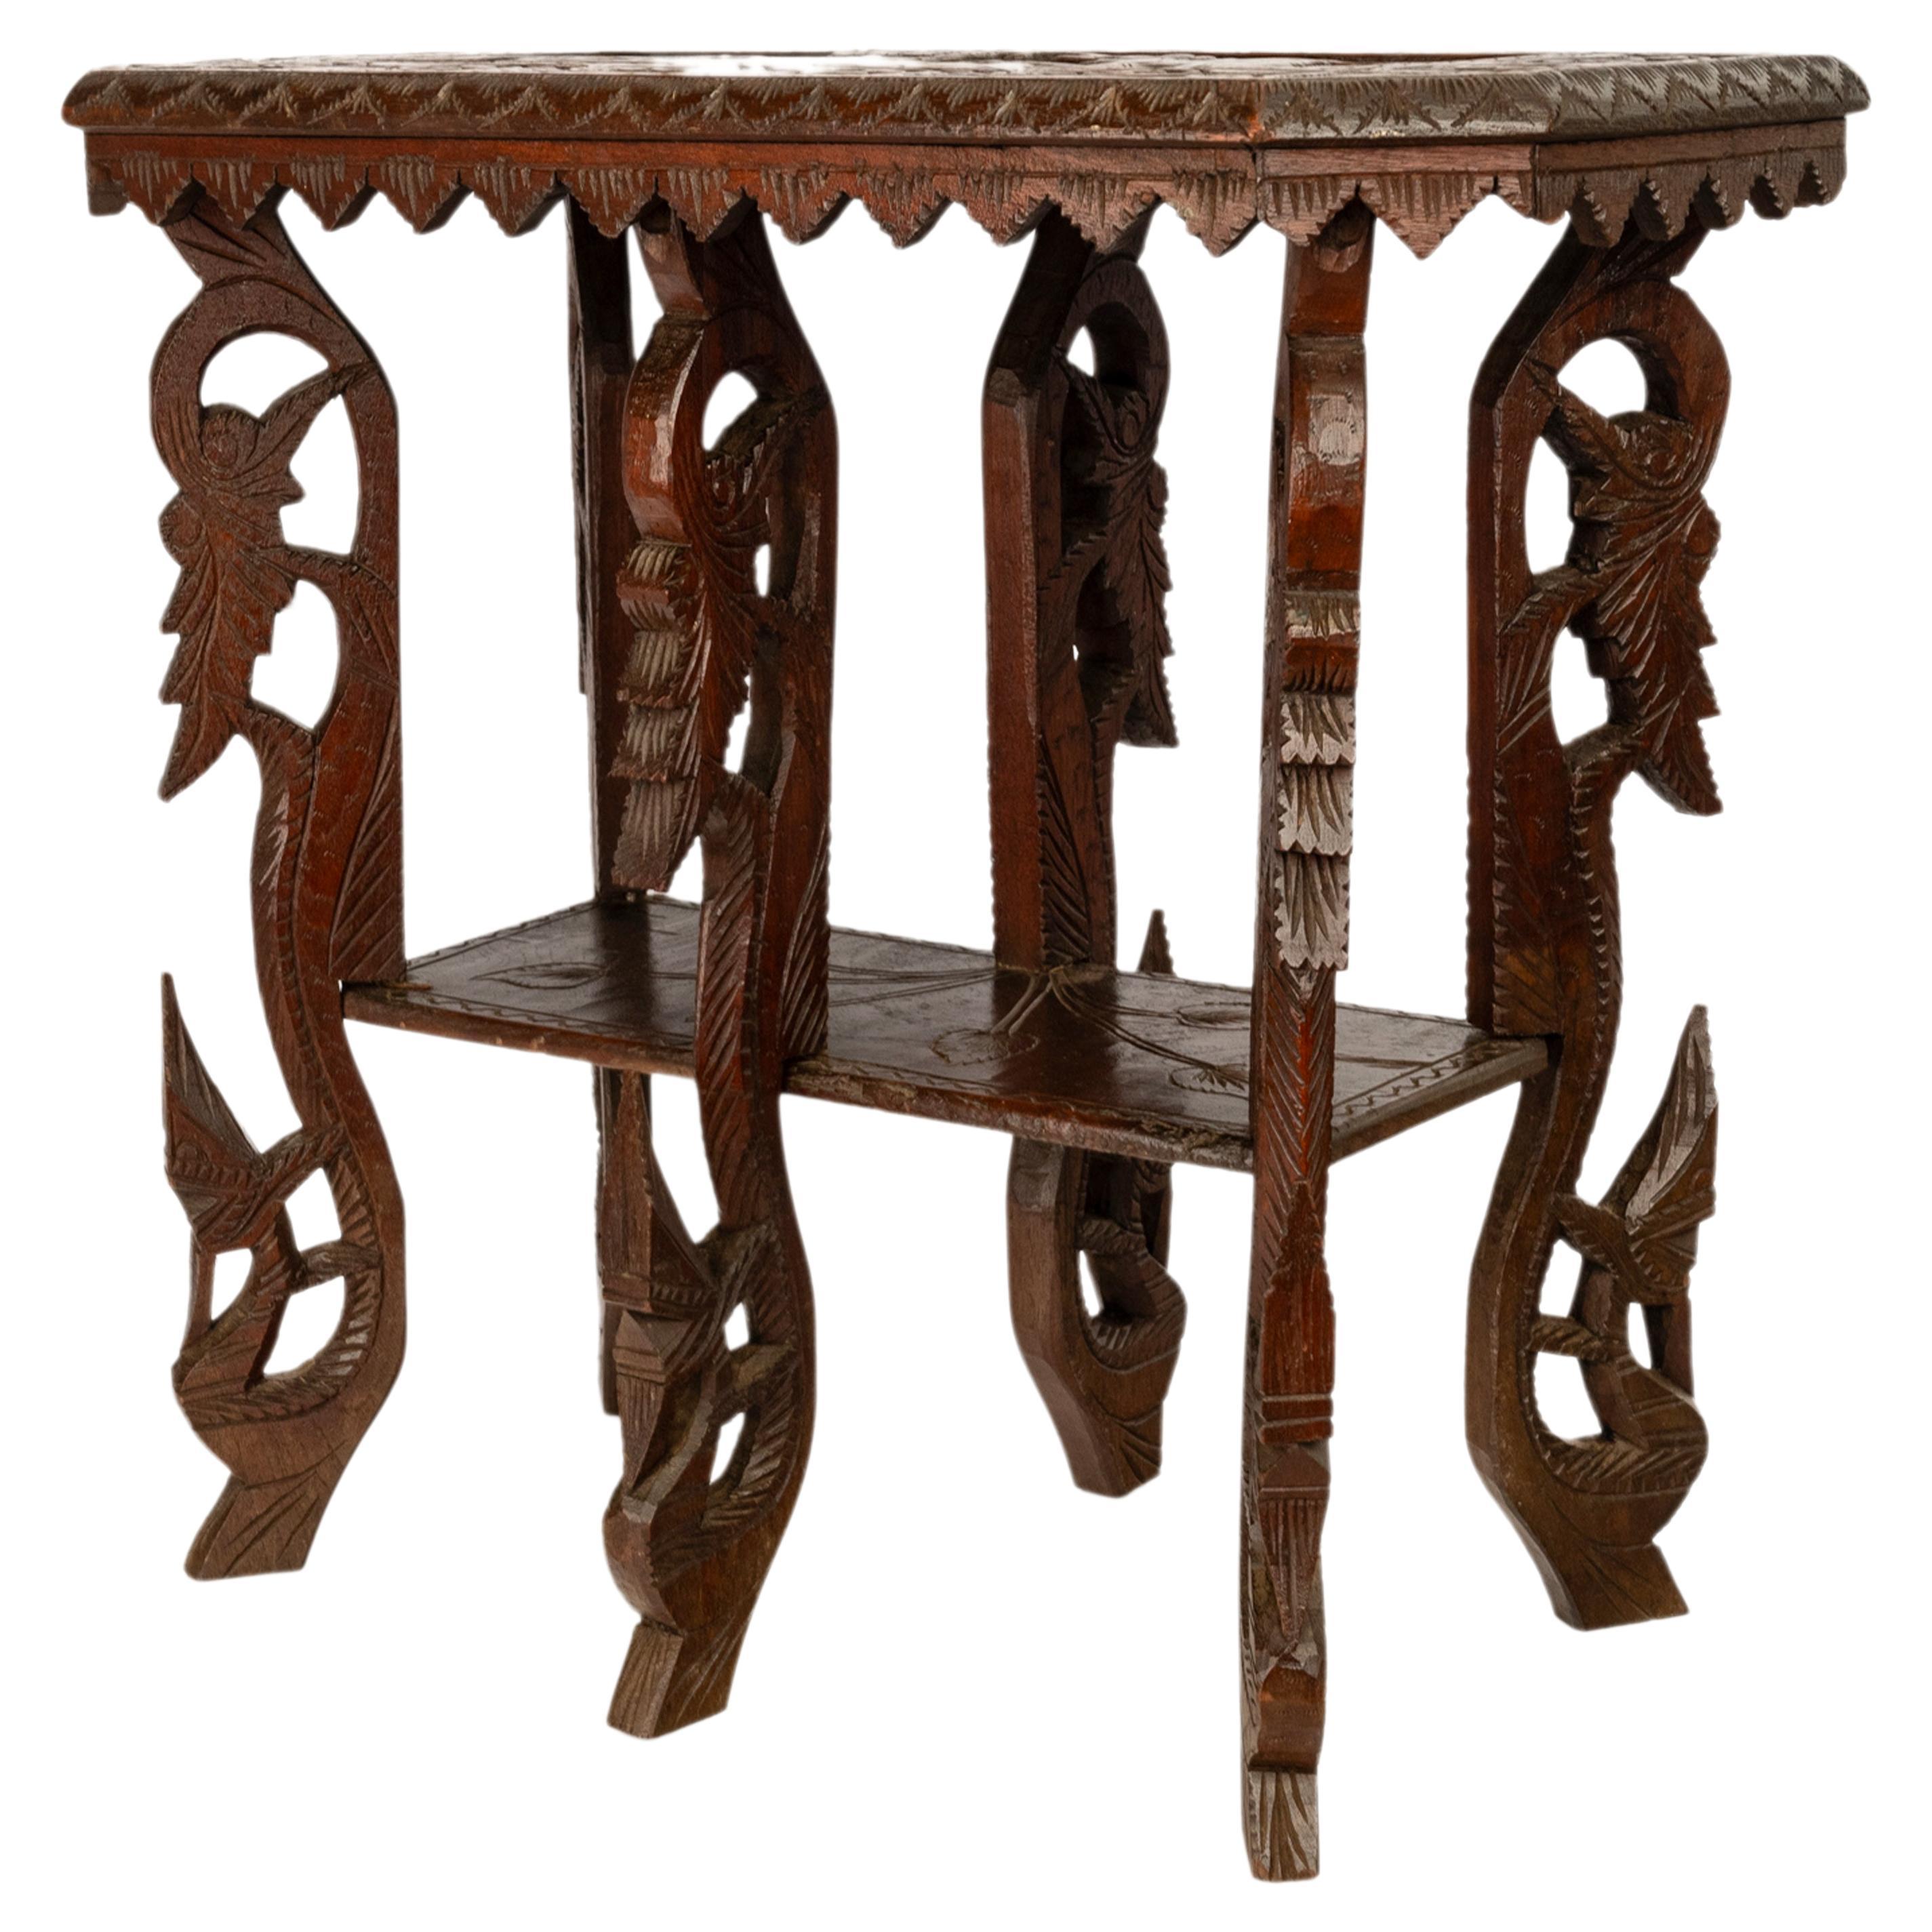 Ein seltener und ungewöhnlicher antiker anglo-indischer geschnitzter Beistelltisch, um 1900.
Der Tisch hat eine seltene Form und steht auf sechs stark geschnitzten Beinen im organischen Stil, die eine untere Etage mit einem indischen